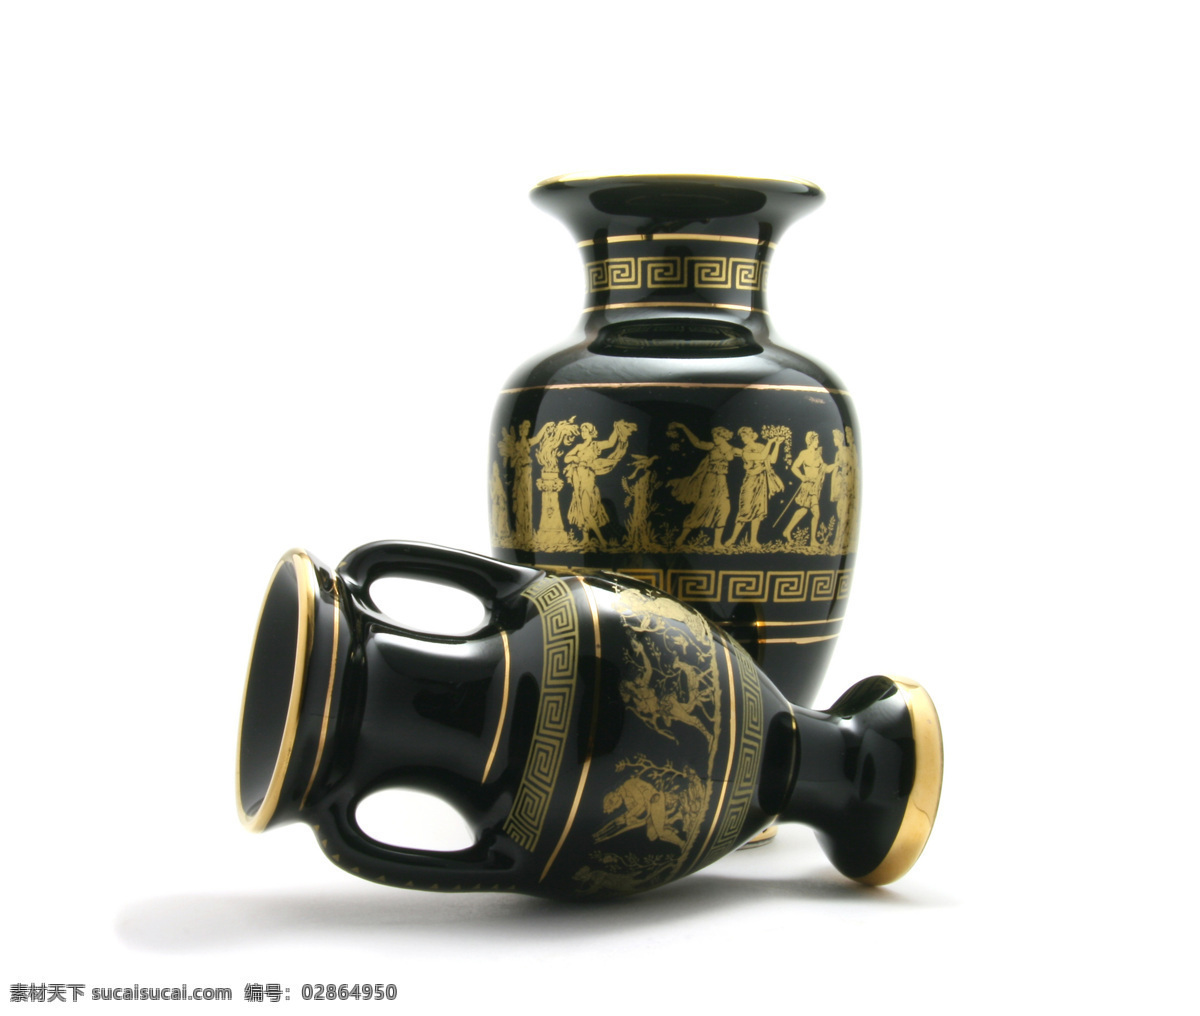 文物 花瓶 文物花瓶 希腊 古希腊 瓶 艺术 彩绘 战争 摄影图库 文化艺术 风景名胜 风景图片